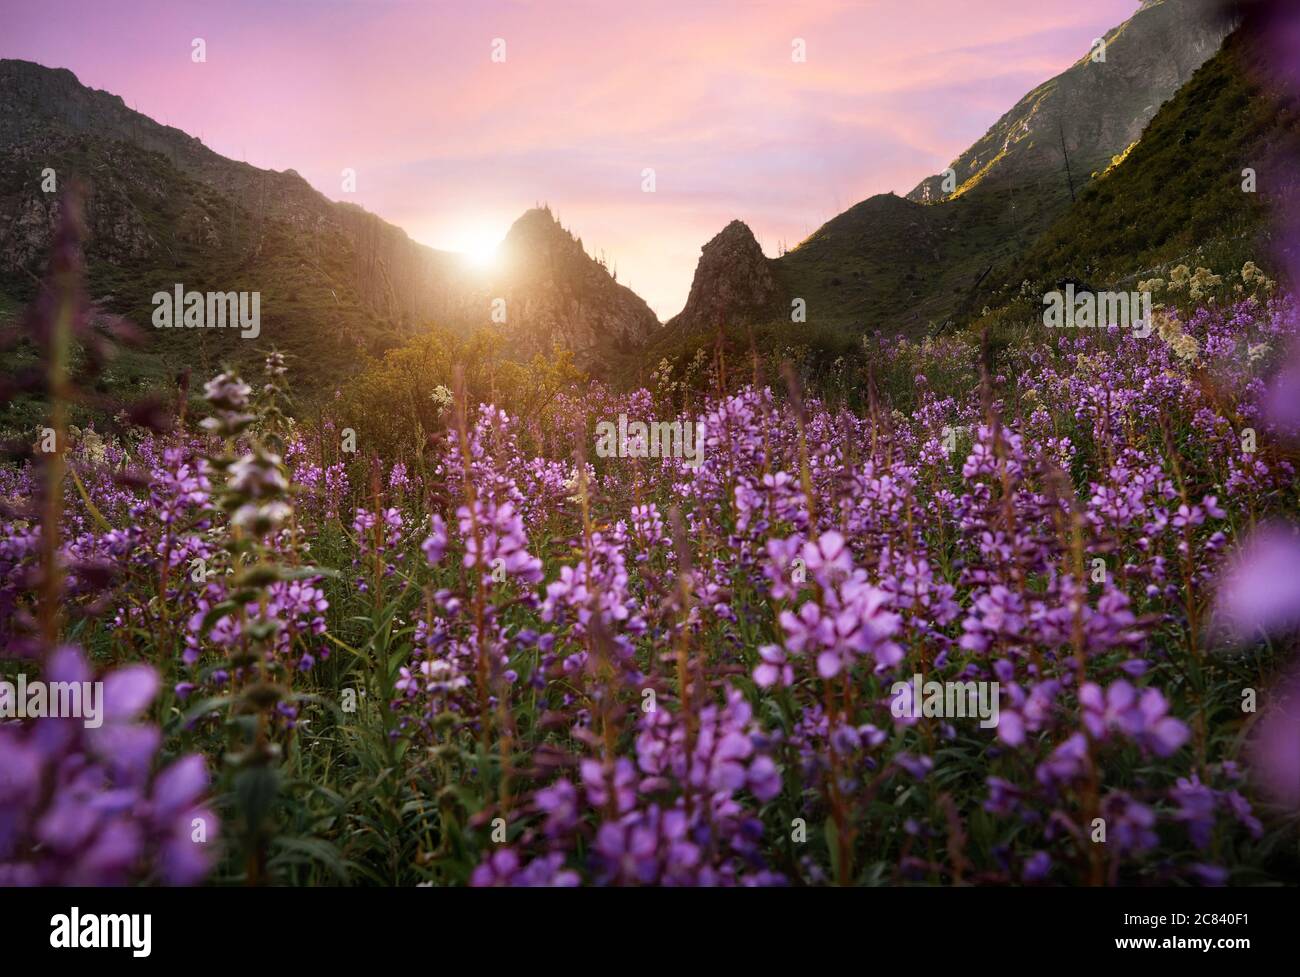 Magnifique paysage de la vallée de la montagne et de la prairie alpine avec des fleurs violettes au premier plan. Concept de randonnée et de plein air Banque D'Images